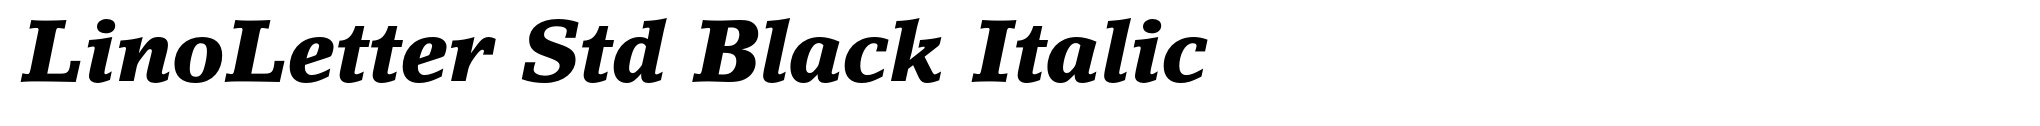 LinoLetter Std Black Italic image